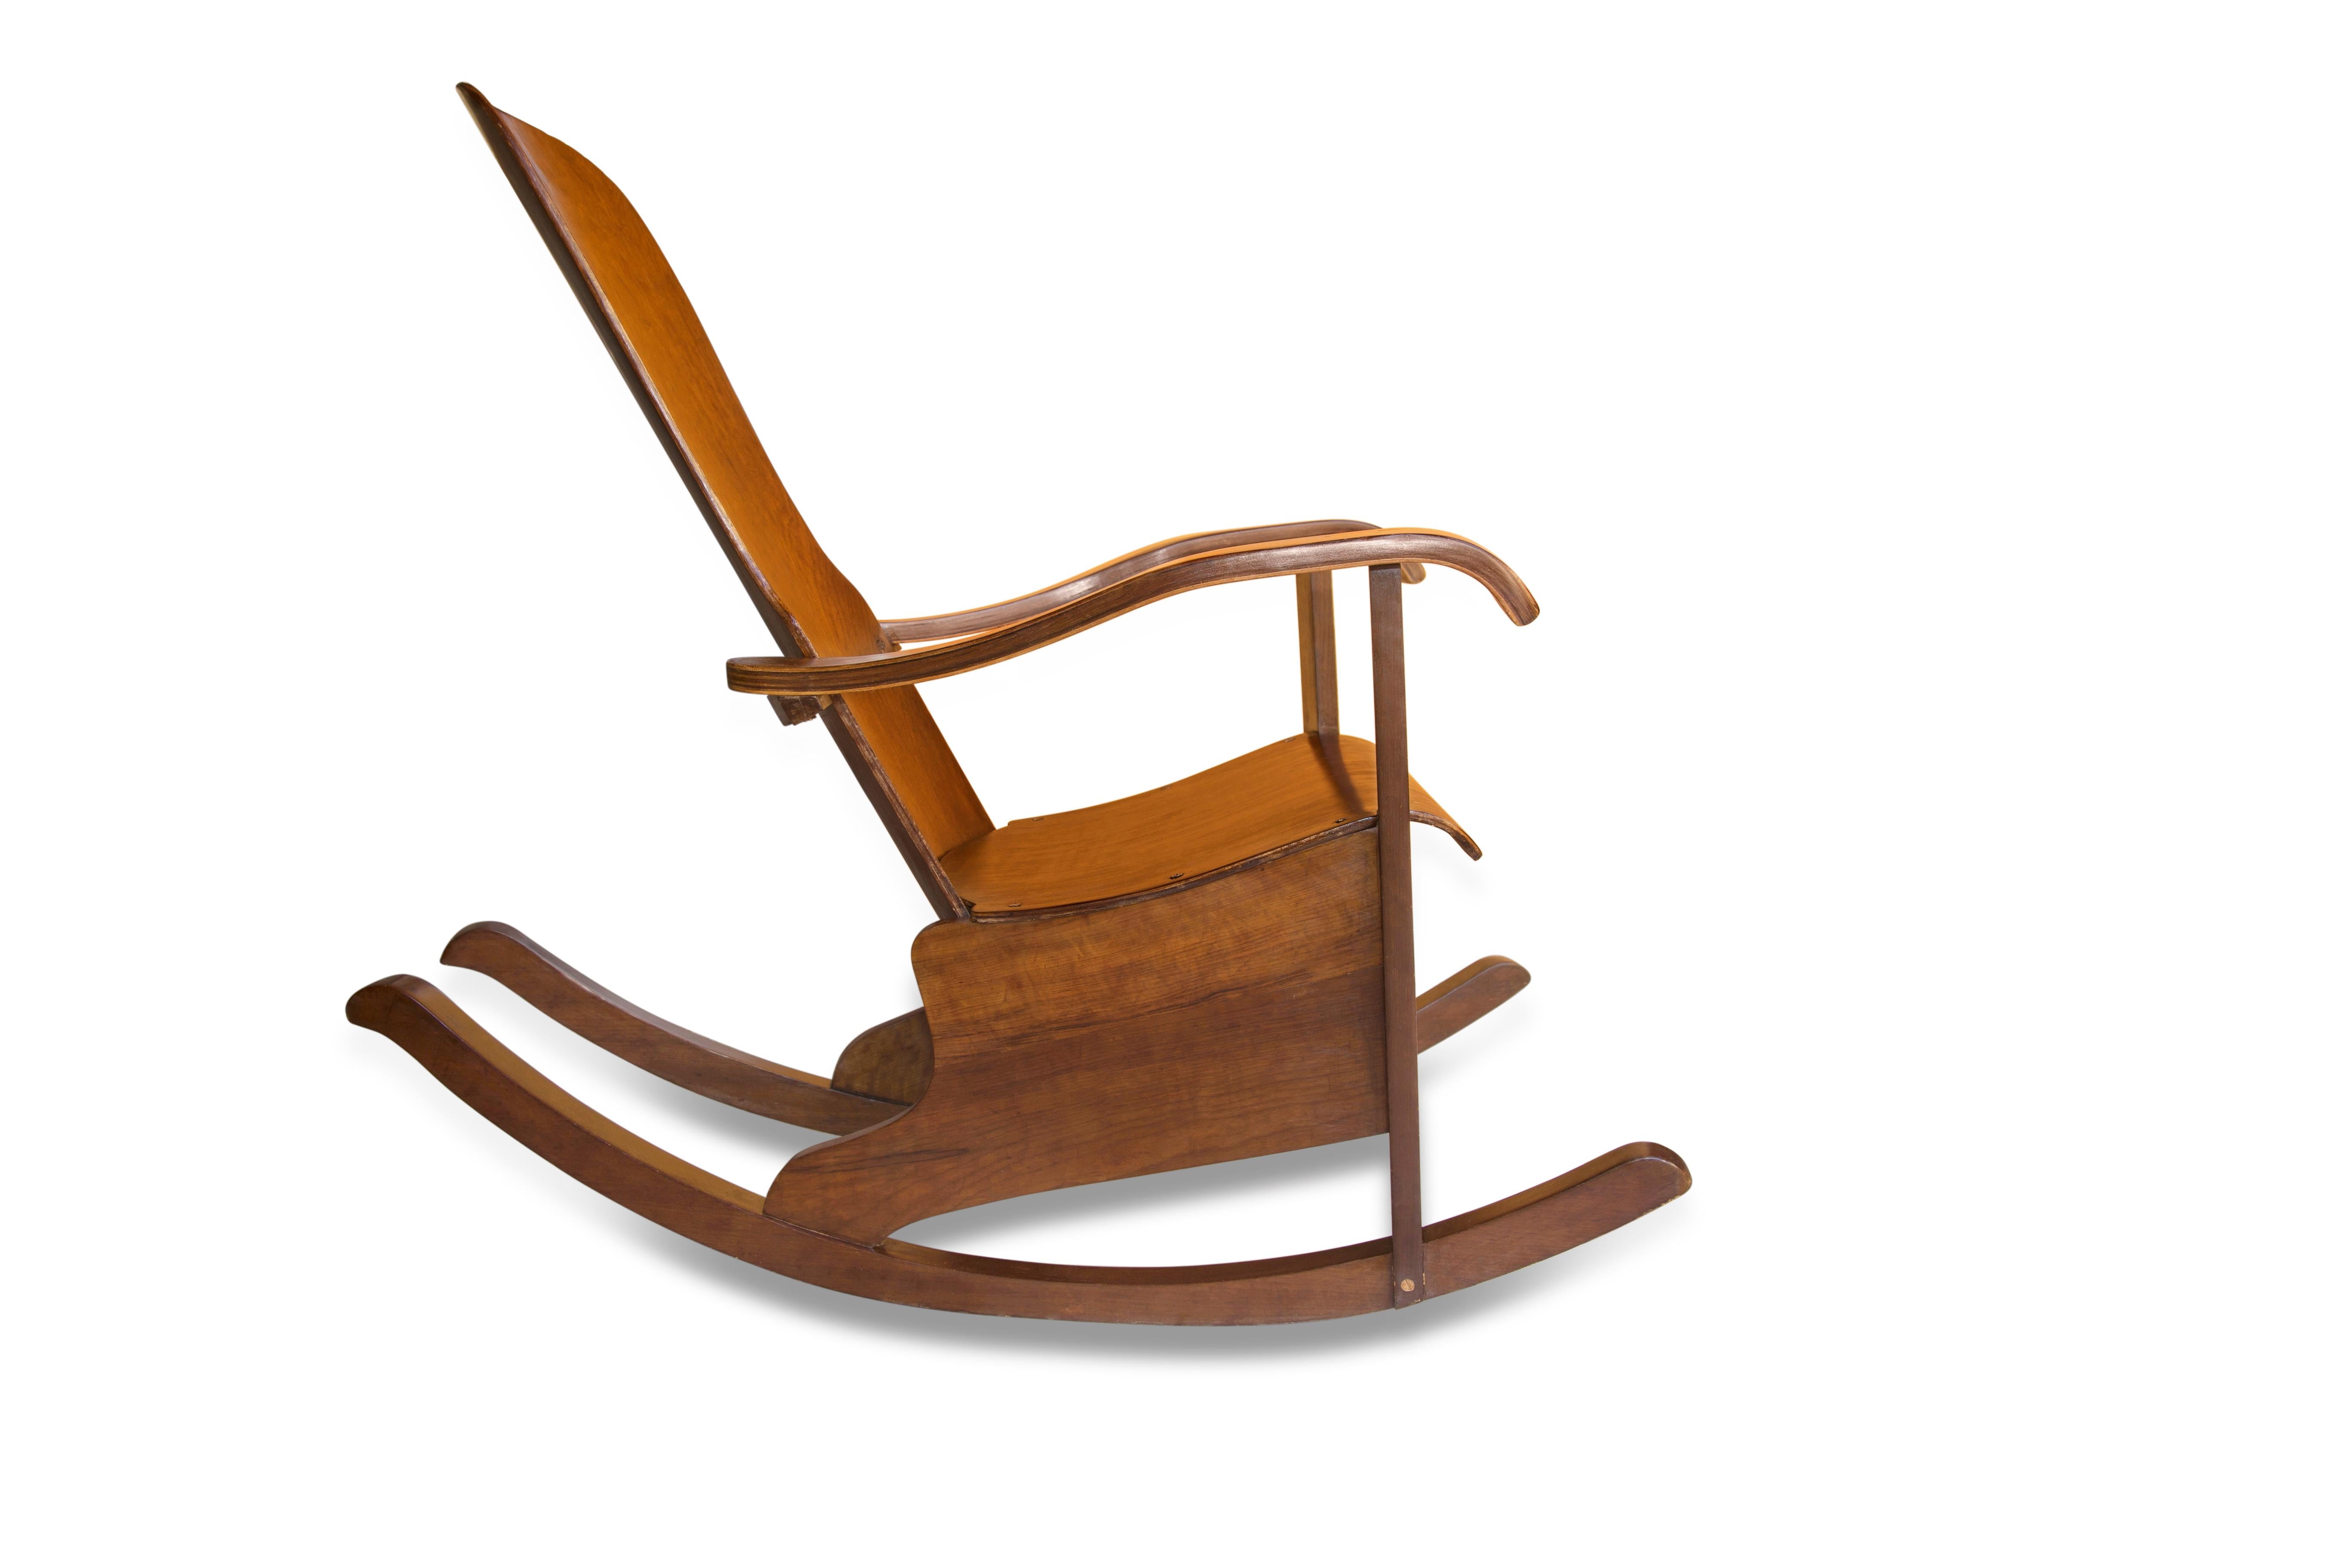 Disponible aujourd'hui, cette chaise à bascule en bois de bœuf, réalisée par Moveis Cimo au Brésil dans les années 50, est magnifique !
 
Les formes courbes qui ont permis de différencier les styles n'ont été possibles que parce que Cimo a importé